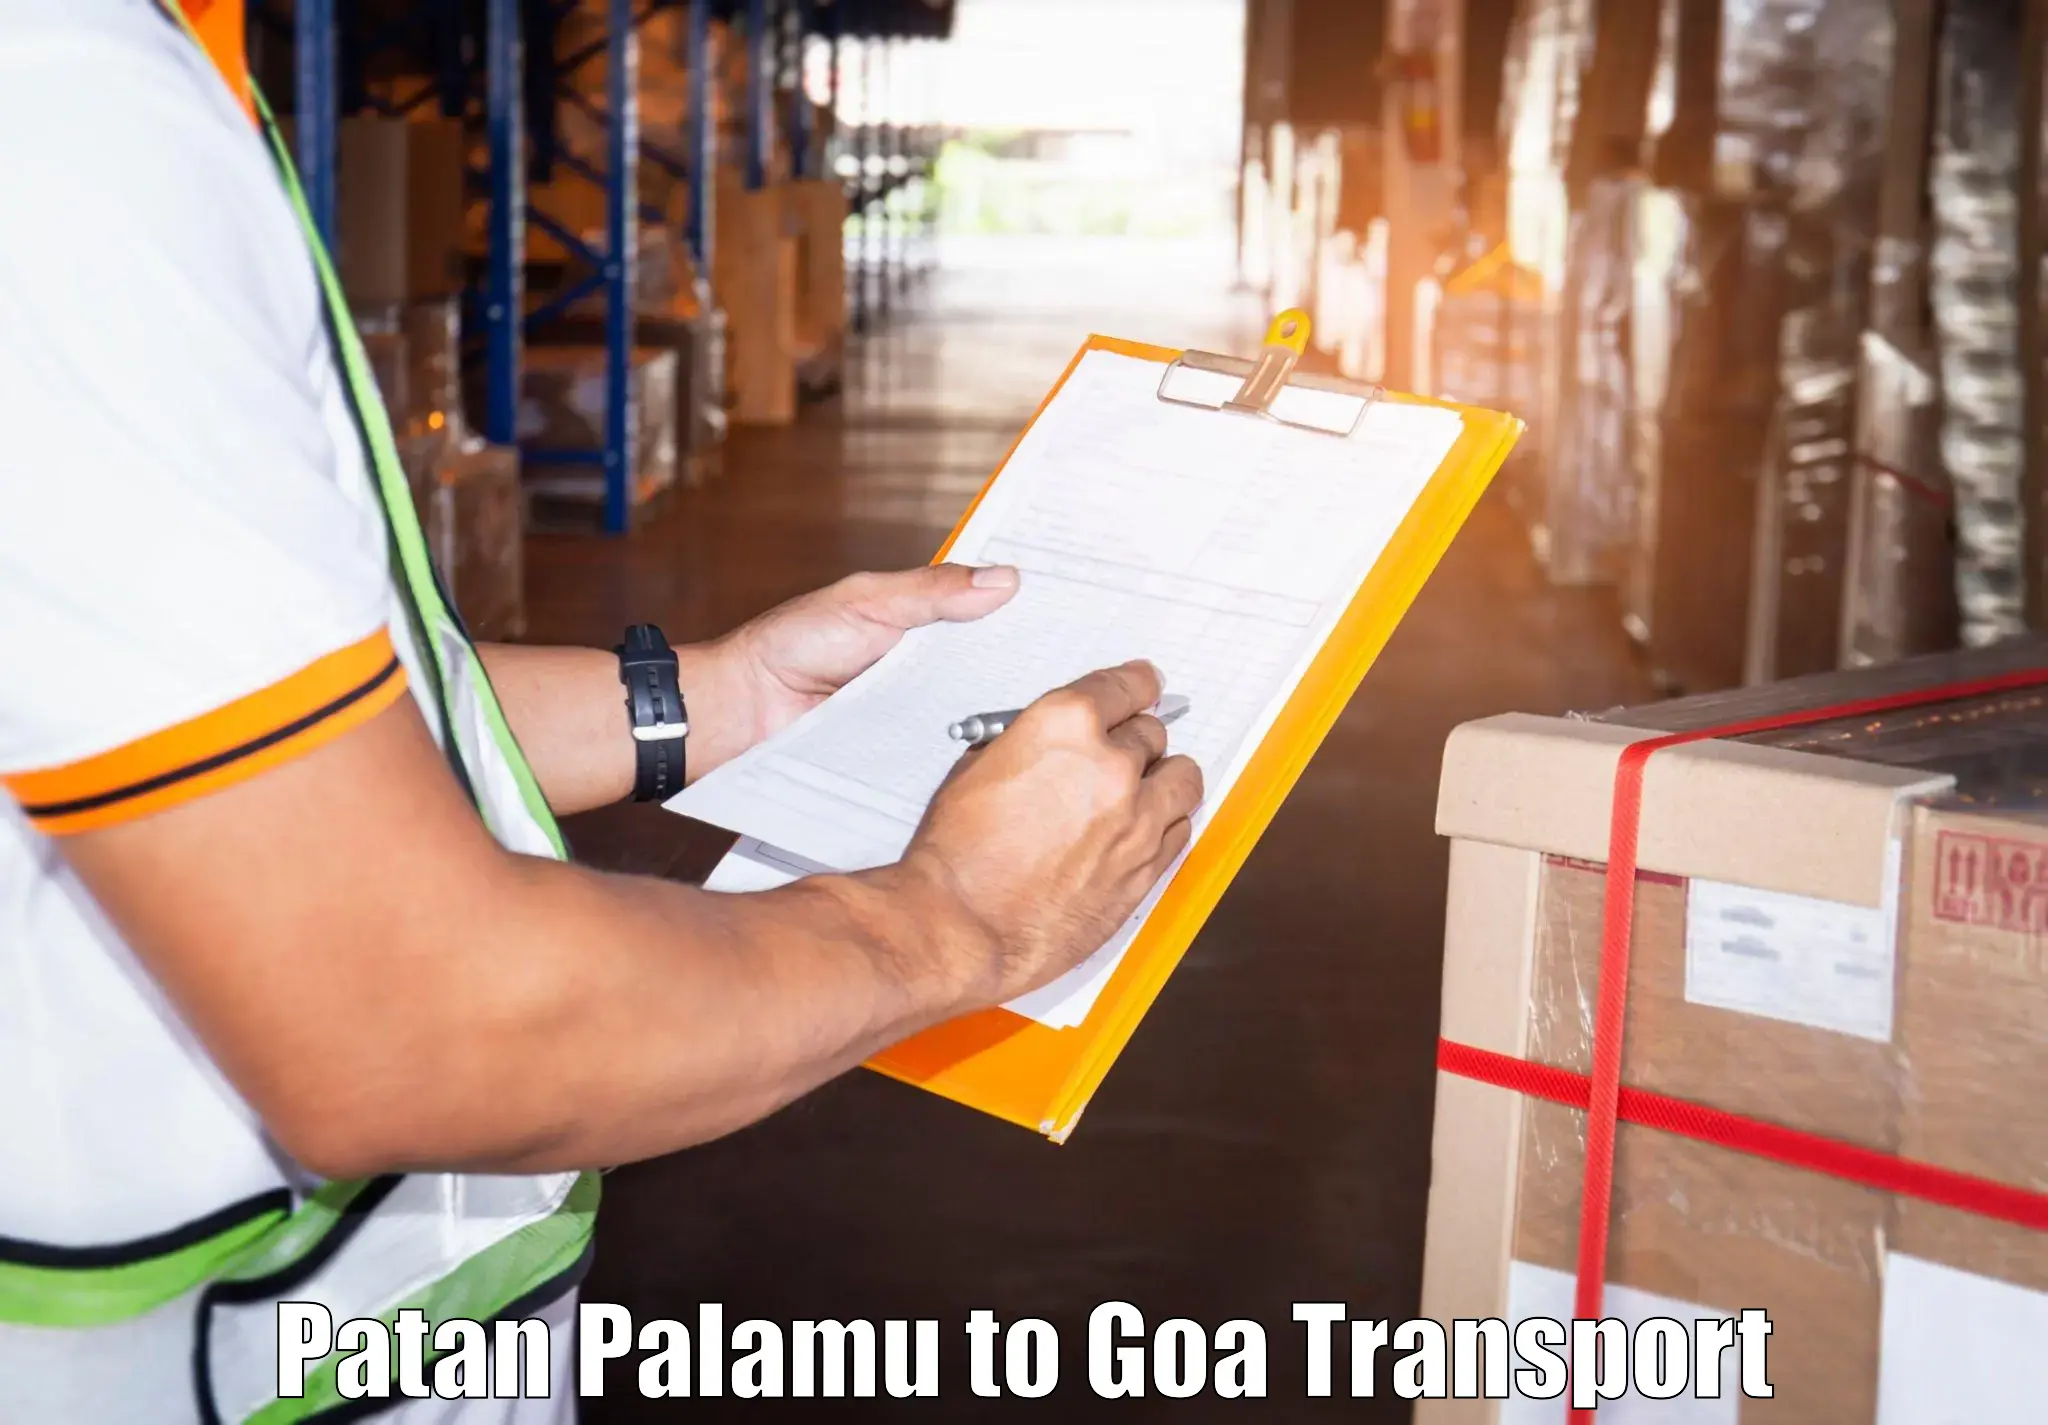 Cycle transportation service Patan Palamu to Goa